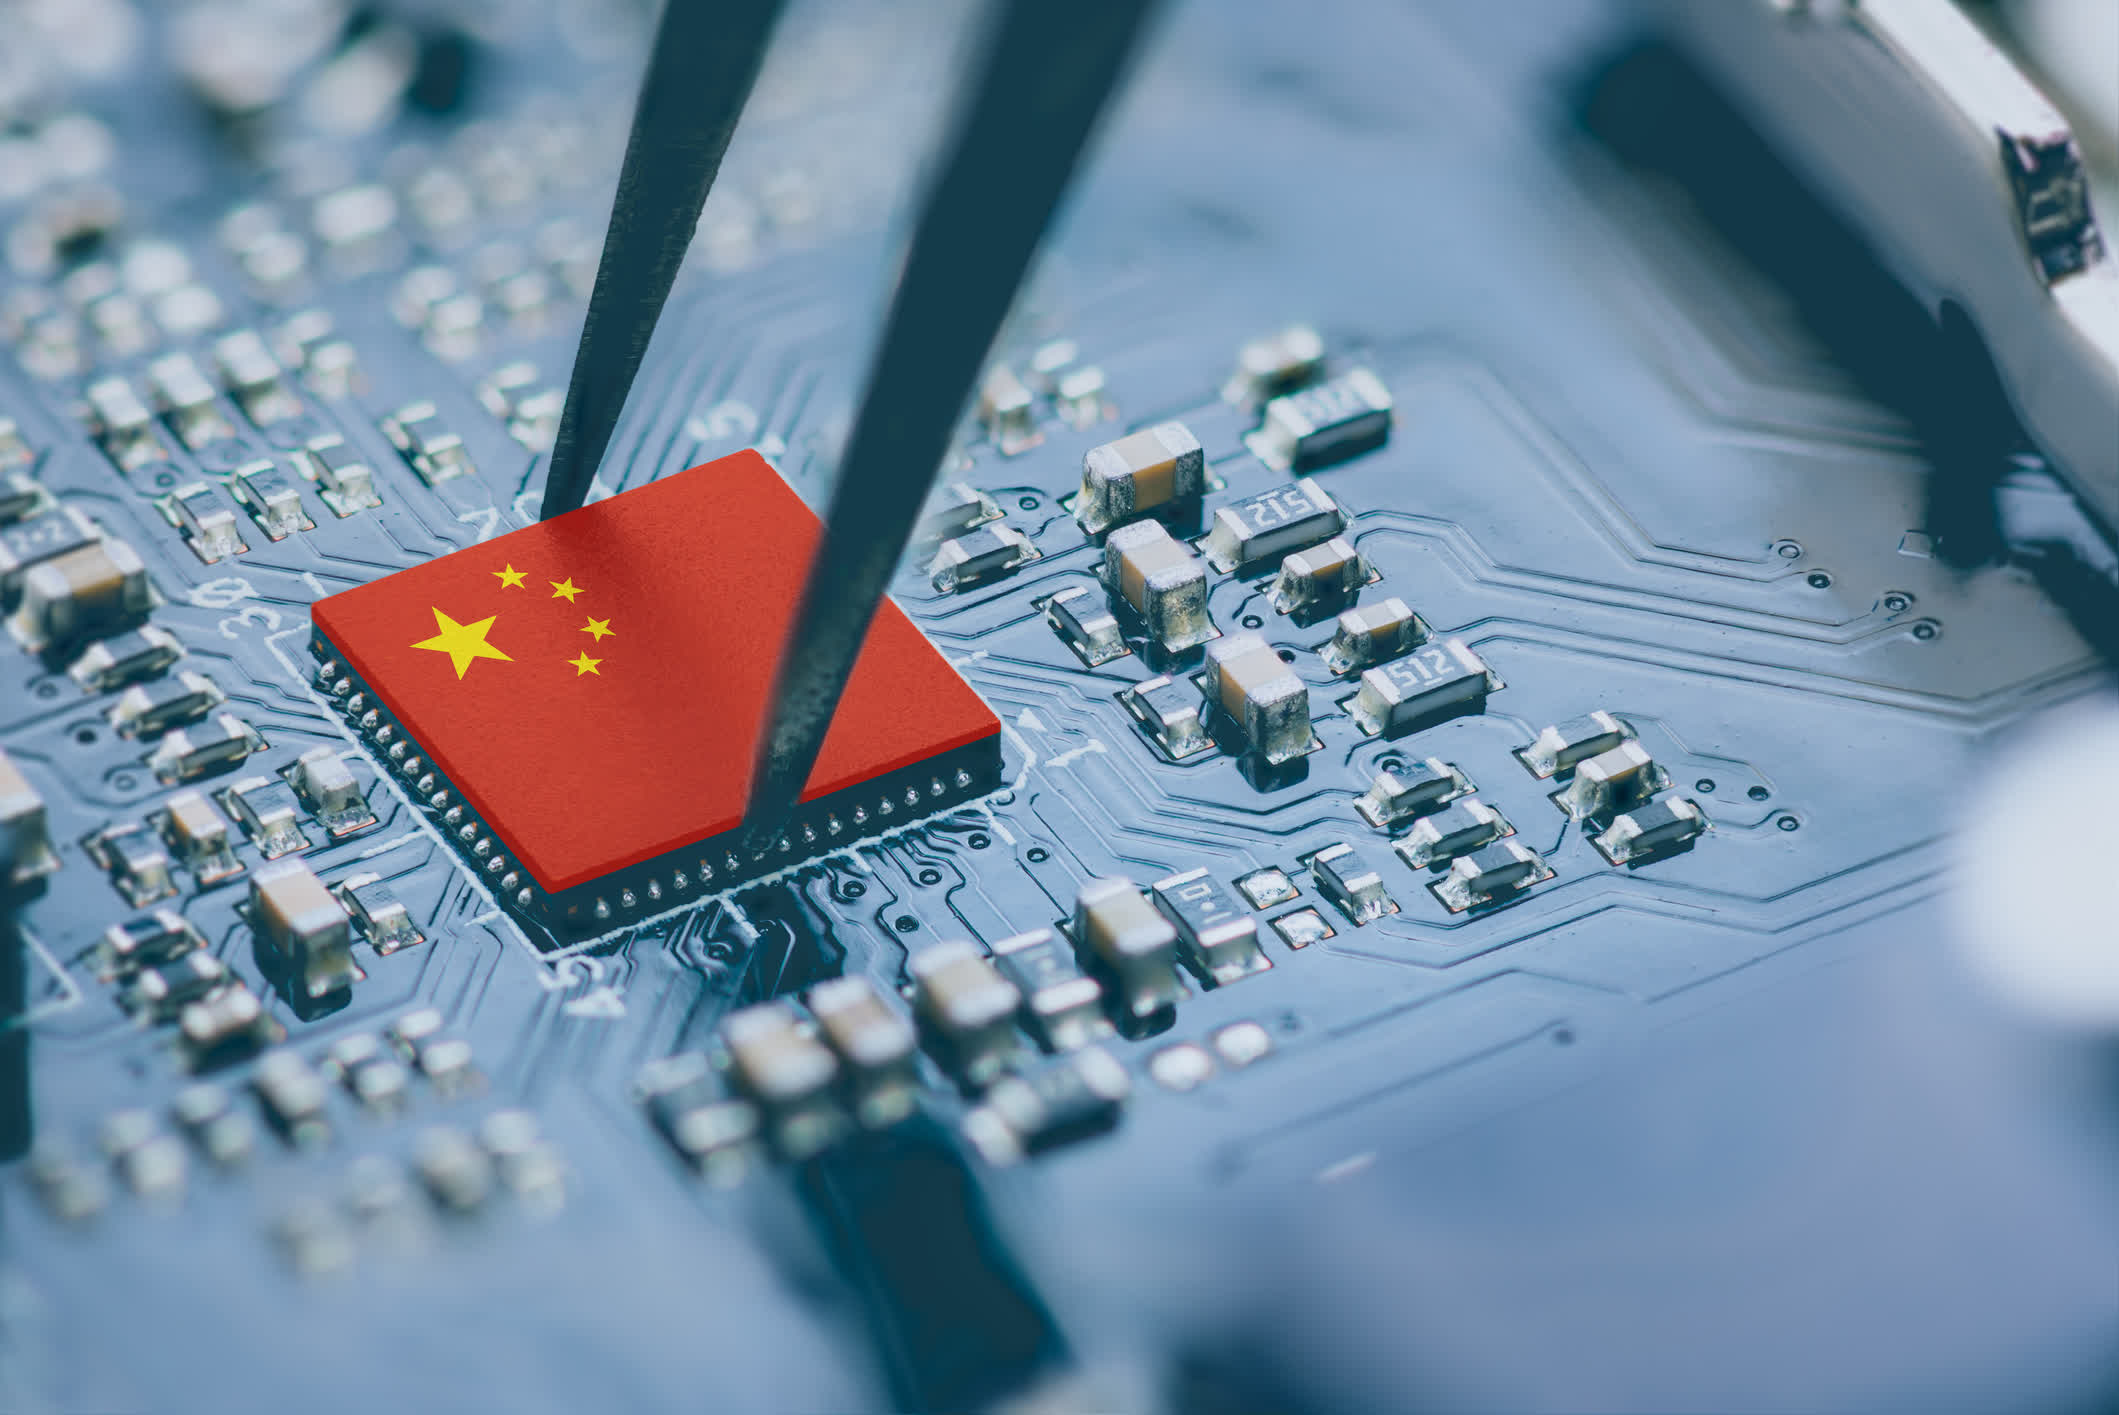 Una empresa surcoreana contrabandeó a China chips fabricados en Estados Unidos por valor de 11,6 millones de dólares